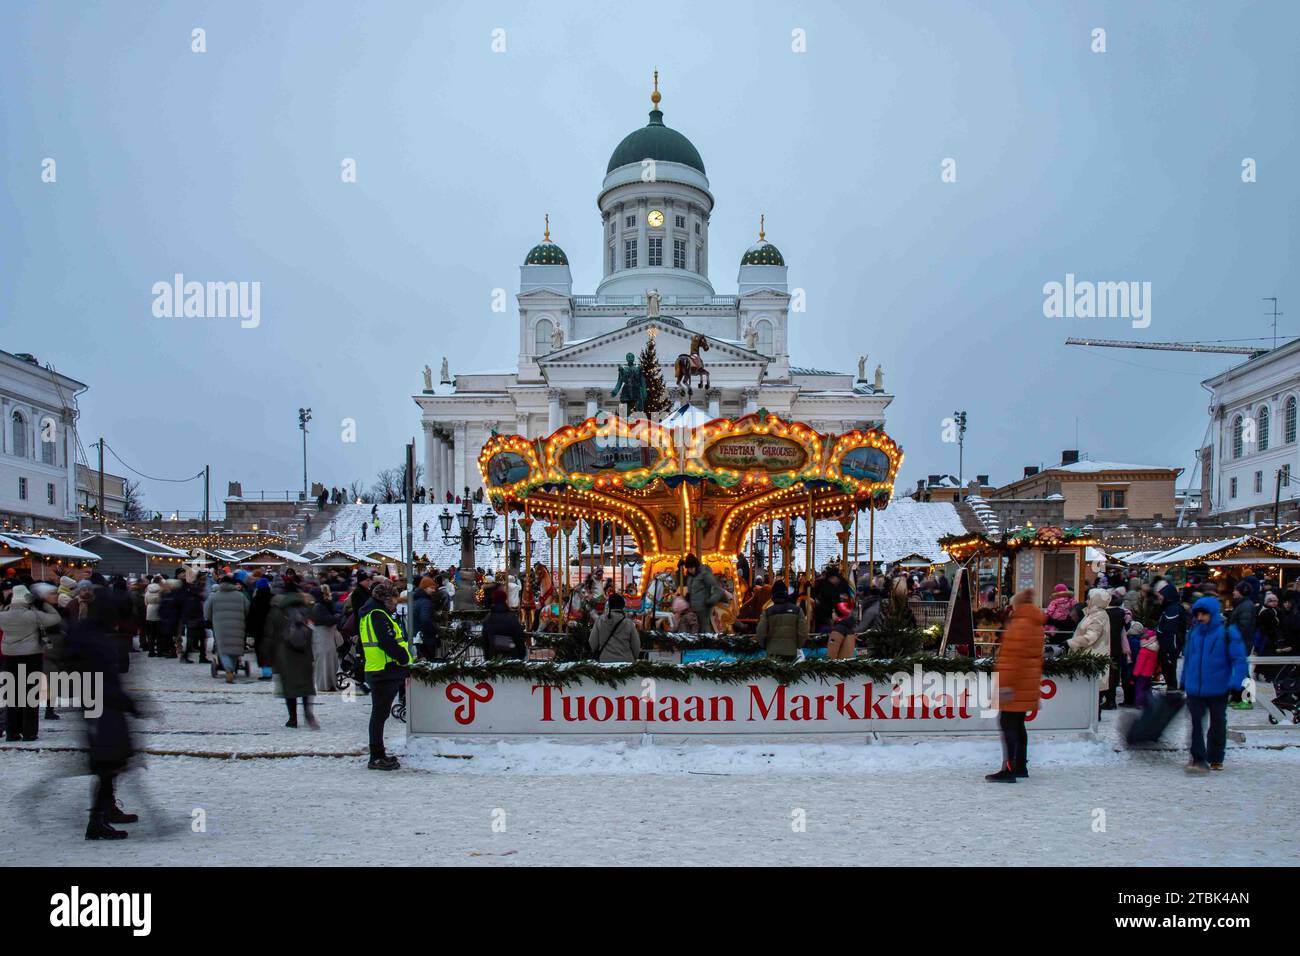 Venezianisches Karussell und Kathedrale von Helsinki während des Weihnachtsmarktes in Helsinki auf dem Senatsplatz in Helsinki, Finnland Stockfoto